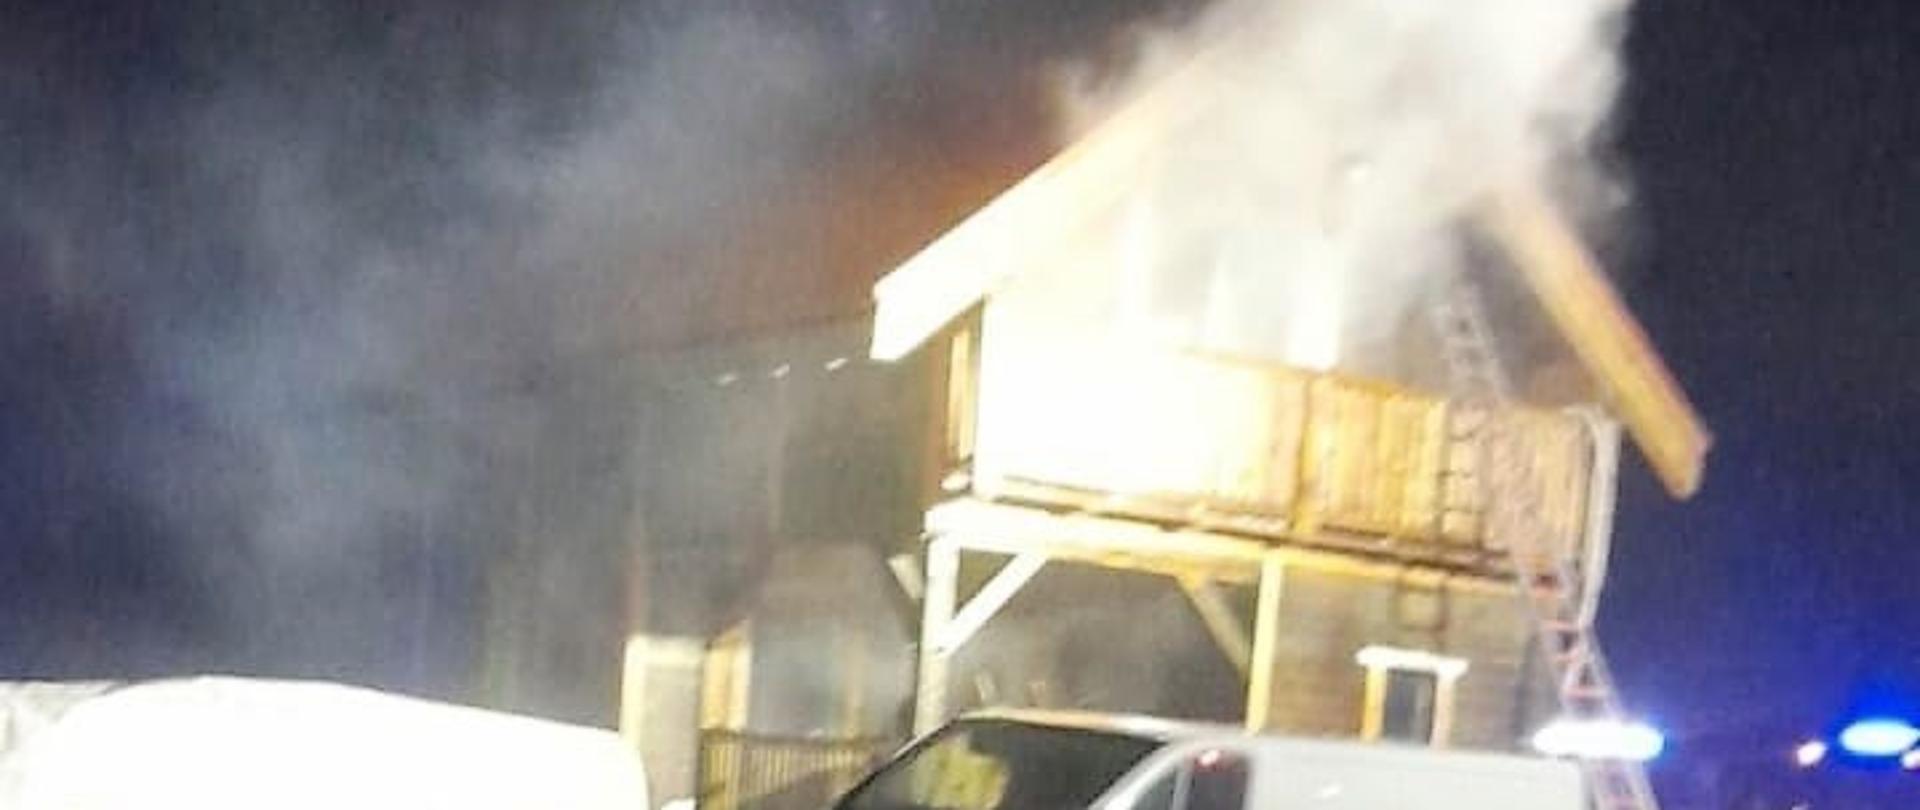 30 kwietnia bieżącego roku około godz. 02:20 doszło do pożaru budynku letniskowego w miejscowości Kobylaki-Czarzaste gm. Jednorożec.
W chwili przyjazdu straży pożarnej zastano pożar rozwinięty na poddaszu drewnianego budynku letniskowego. Mieszkaniec samodzielnie opuścił dom i zaalarmował służby ratunkowe.
Strażacy po dokonaniu rozpoznania, zabezpieczeniu miejsca zdarzenia i odłączeniu zasilania elektrycznego w obiekcie przystąpili do gaszenia pożaru.
Działania prowadzono wewnątrz budynku i na zewnątrz podając prądy gaśnicze wody w natarciu do pomieszczeń na poddaszu. Po stłumieniu ognia przystąpiono do oddymiania domu, rozbiórki drewnianych ścian działowych i dachu oraz przelaniu wodą nadpalonych elementów konstrukcji.
W działaniach udział brało 7 zastępów straży pożarnej: 3x JRG Przasnysz, OSP Jednorożec, OSP Lipa, OSP Romany Sebory i OSP Ulatowo Pogorzel.
Opracował: asp. Sekuna Rafał.
Zdjęcia: KP PSP Przasnysz.
